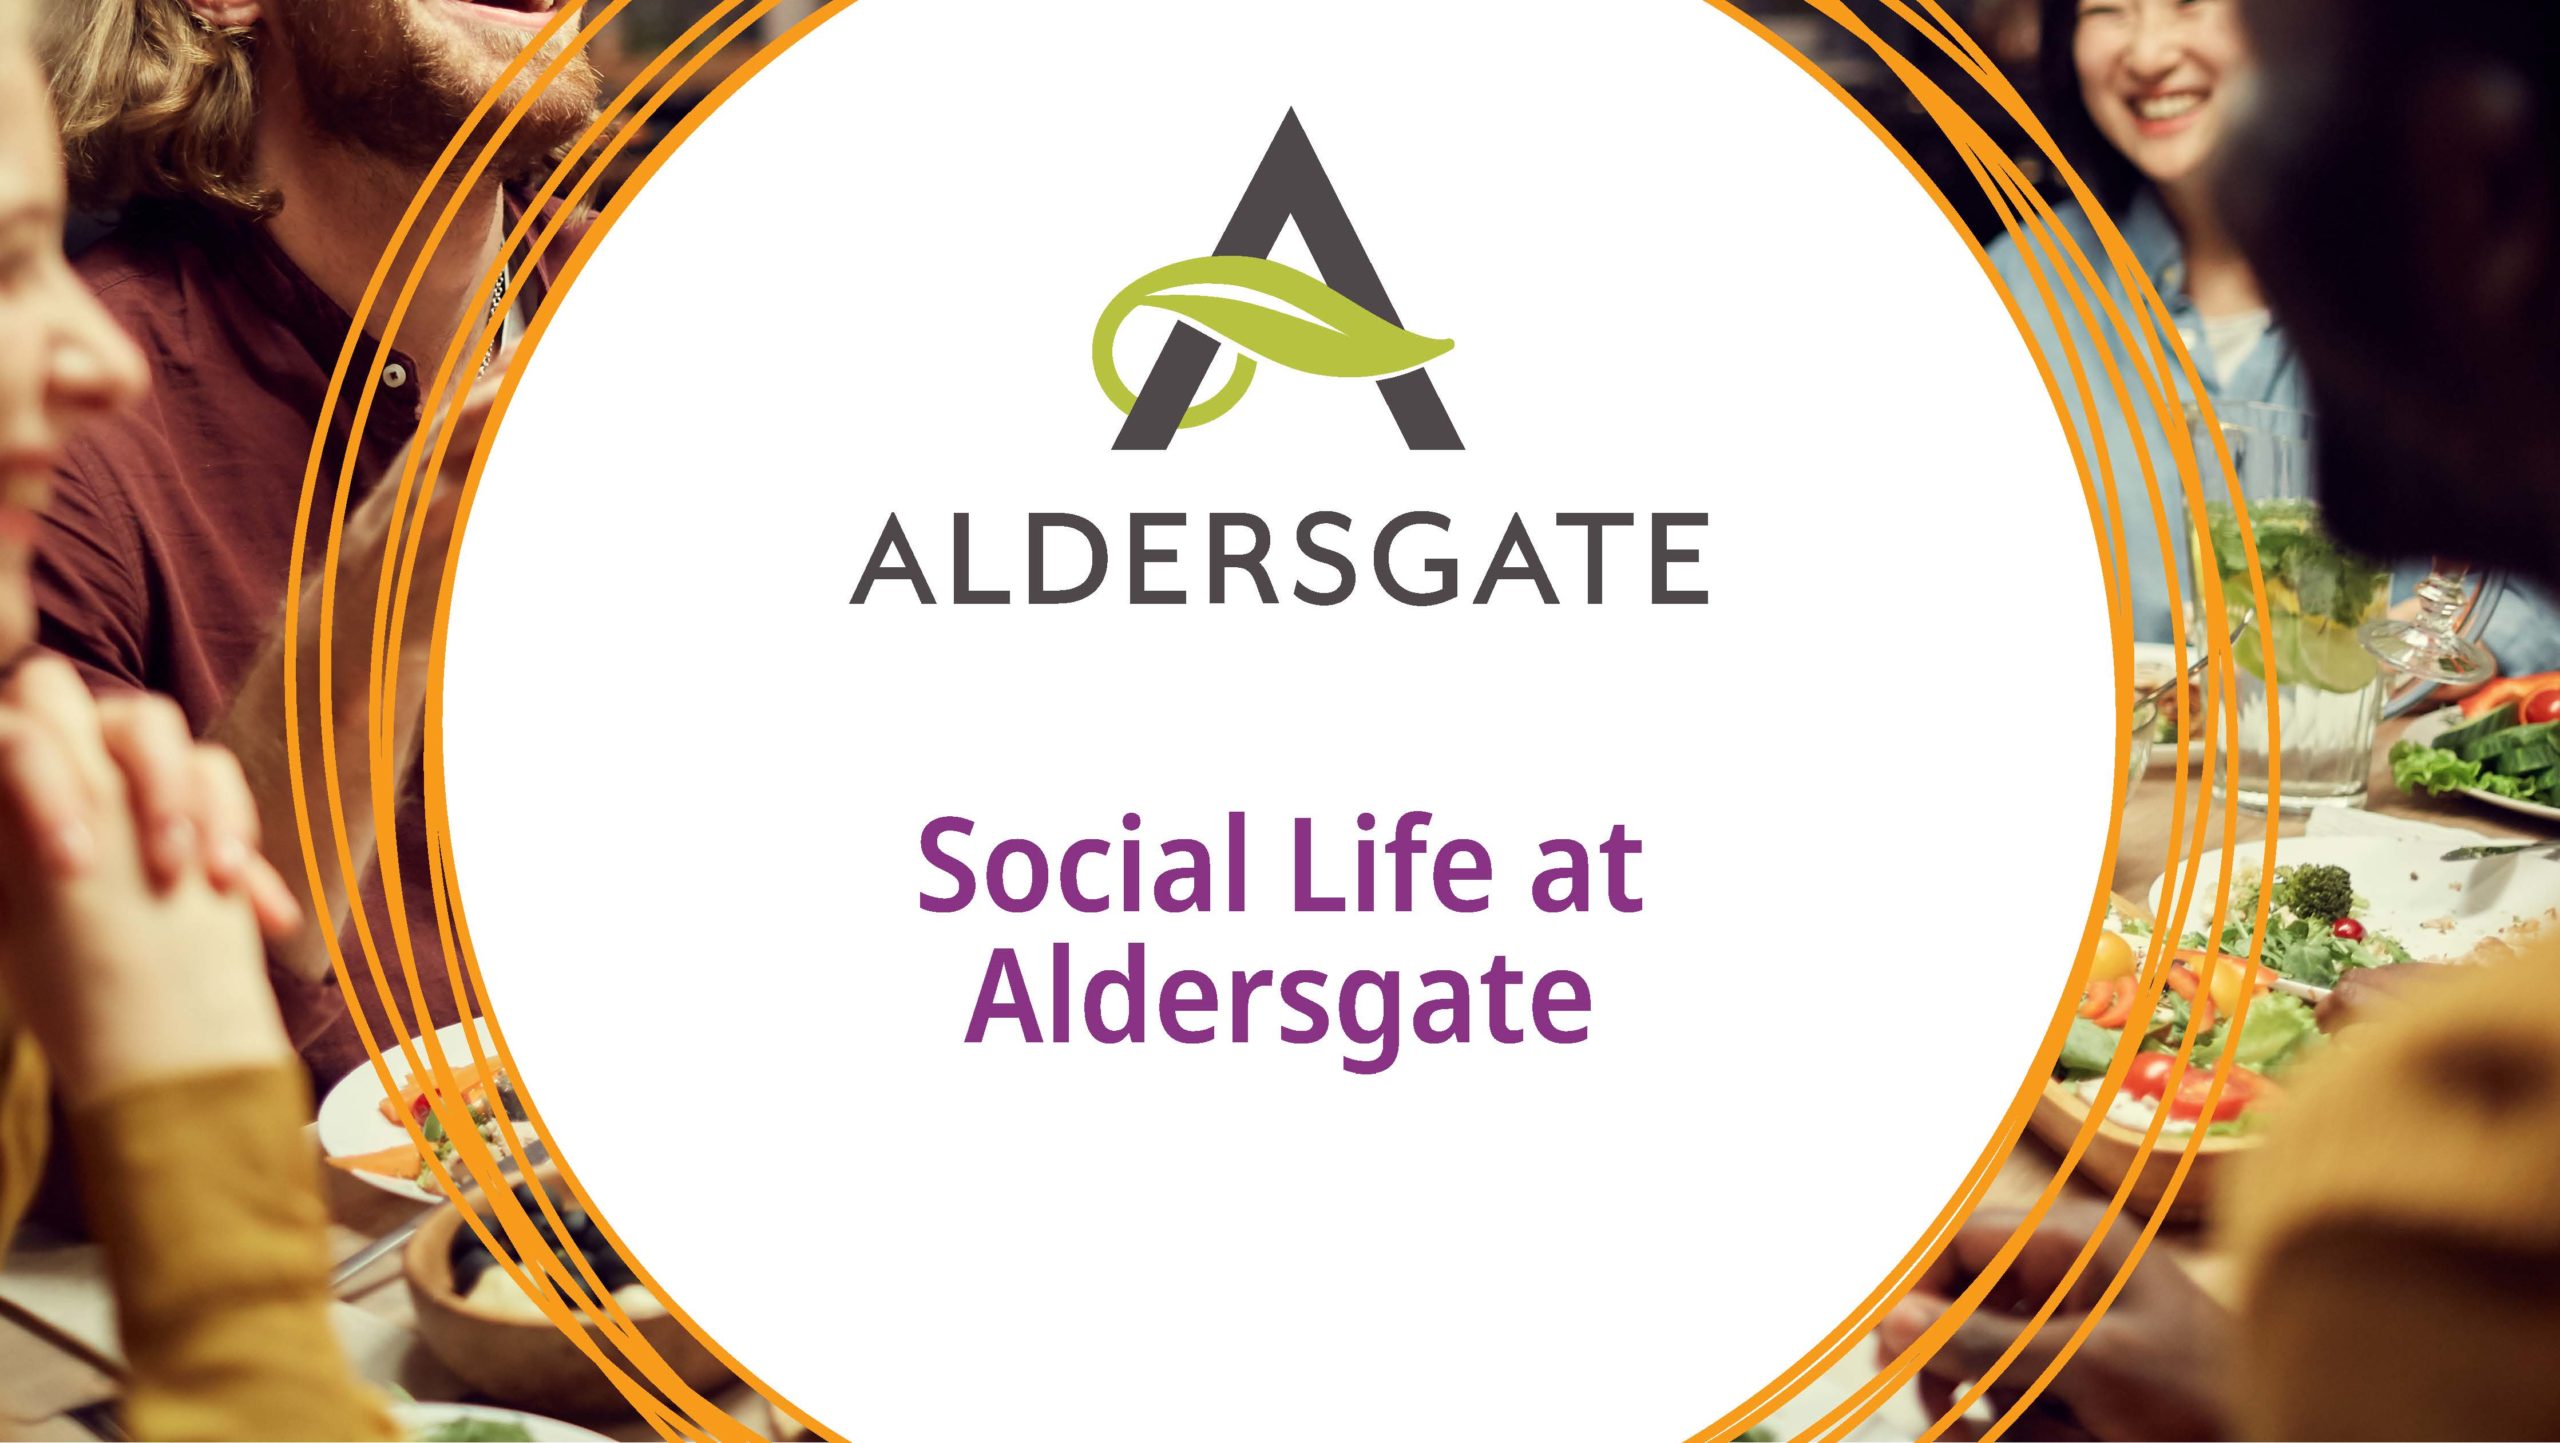 Social life at Aldersgate - Aldersgate Life Plan Community